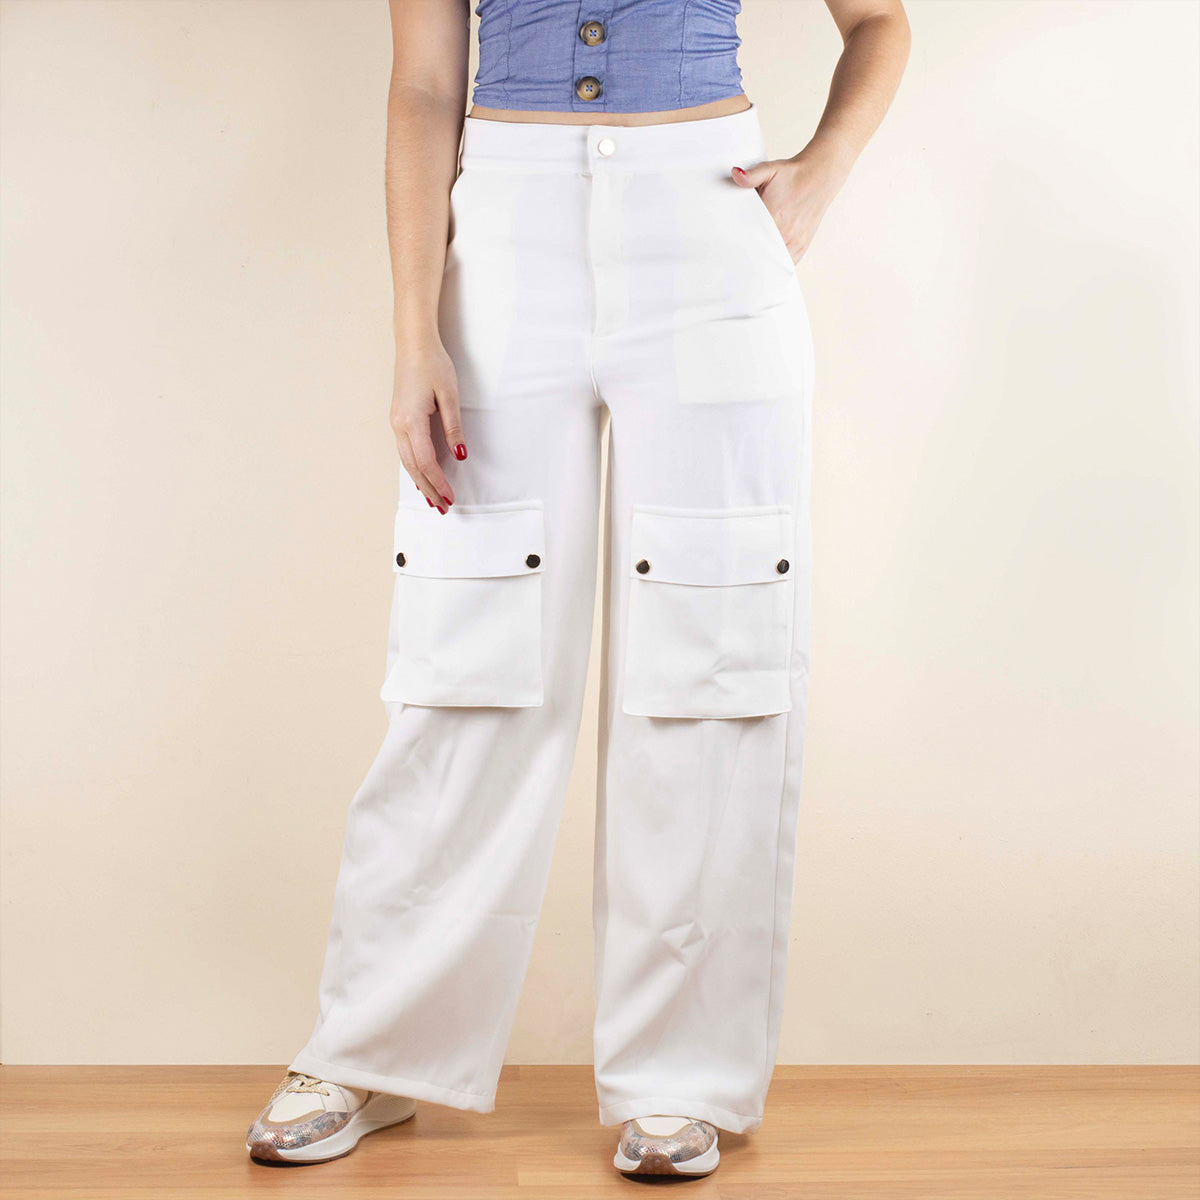 Pantalones casuales color blanco en bota recta